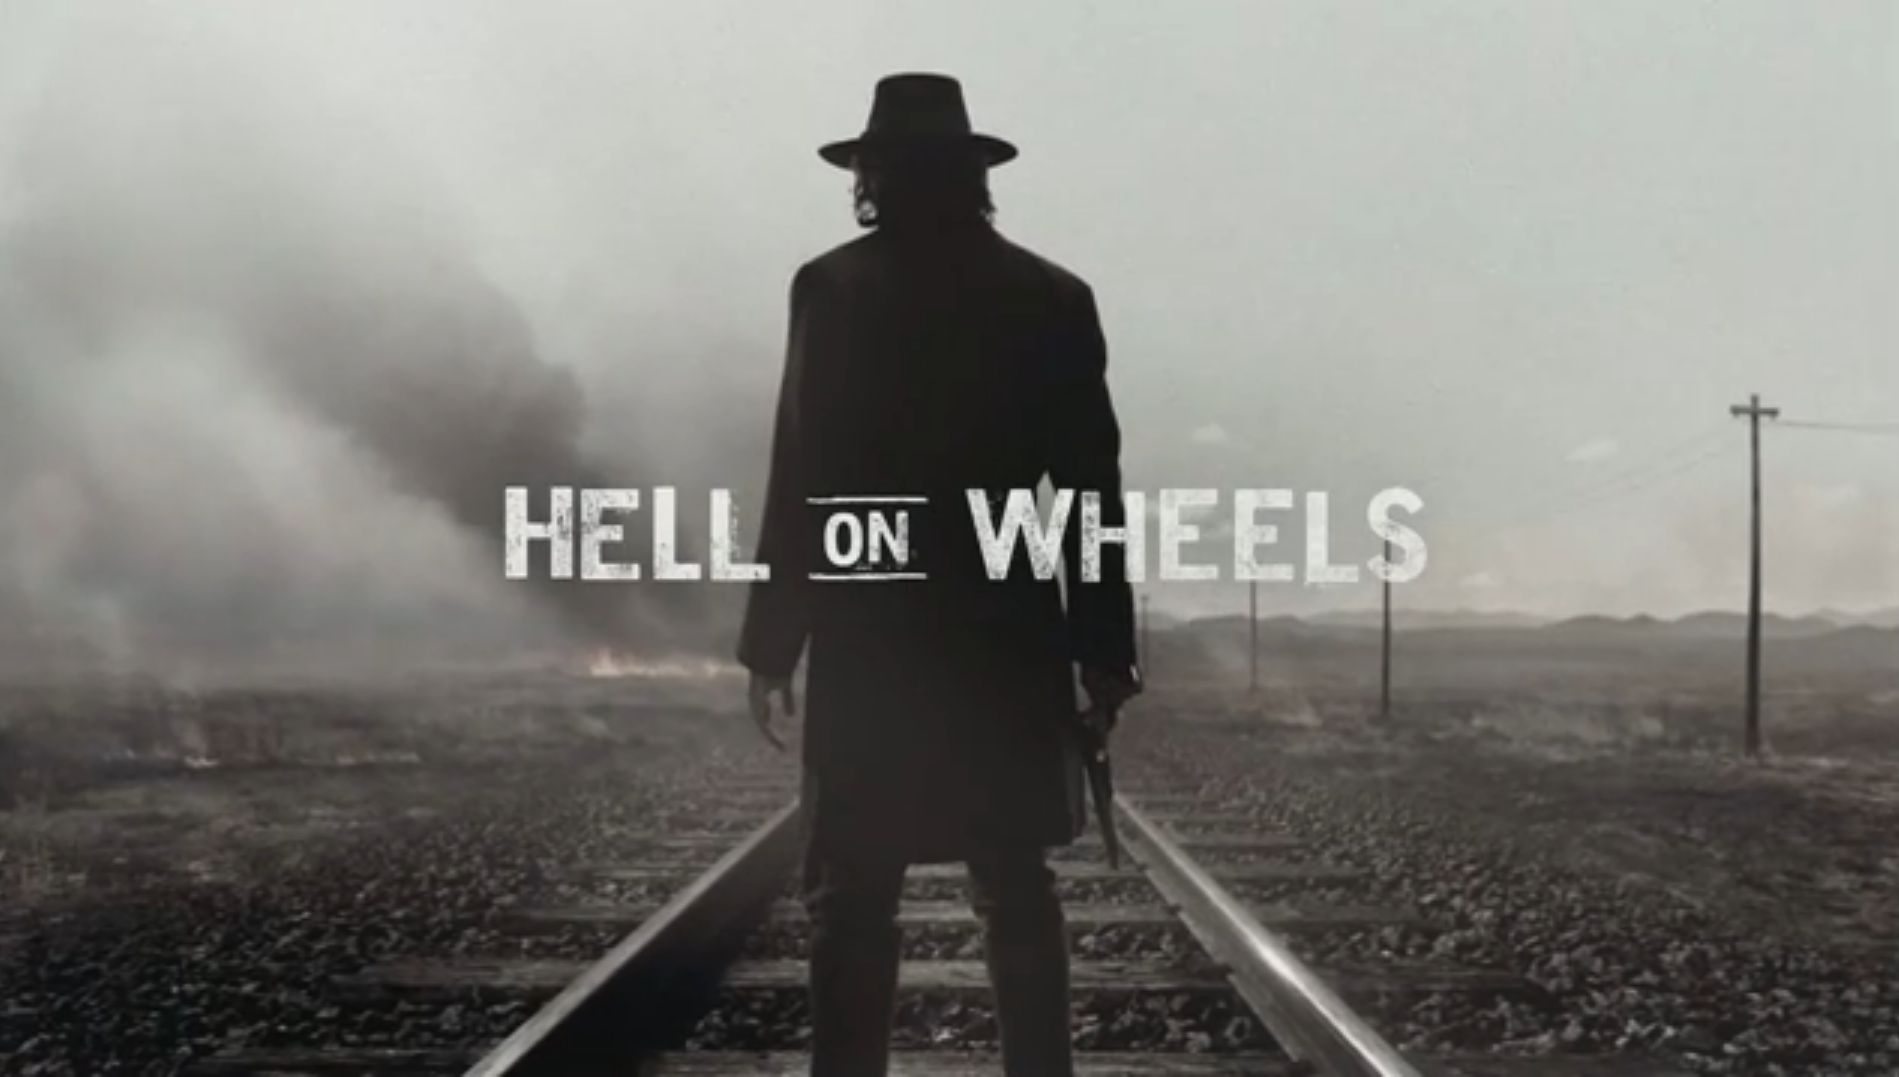 Hell on wheels saison 5 date de sortie première 2015